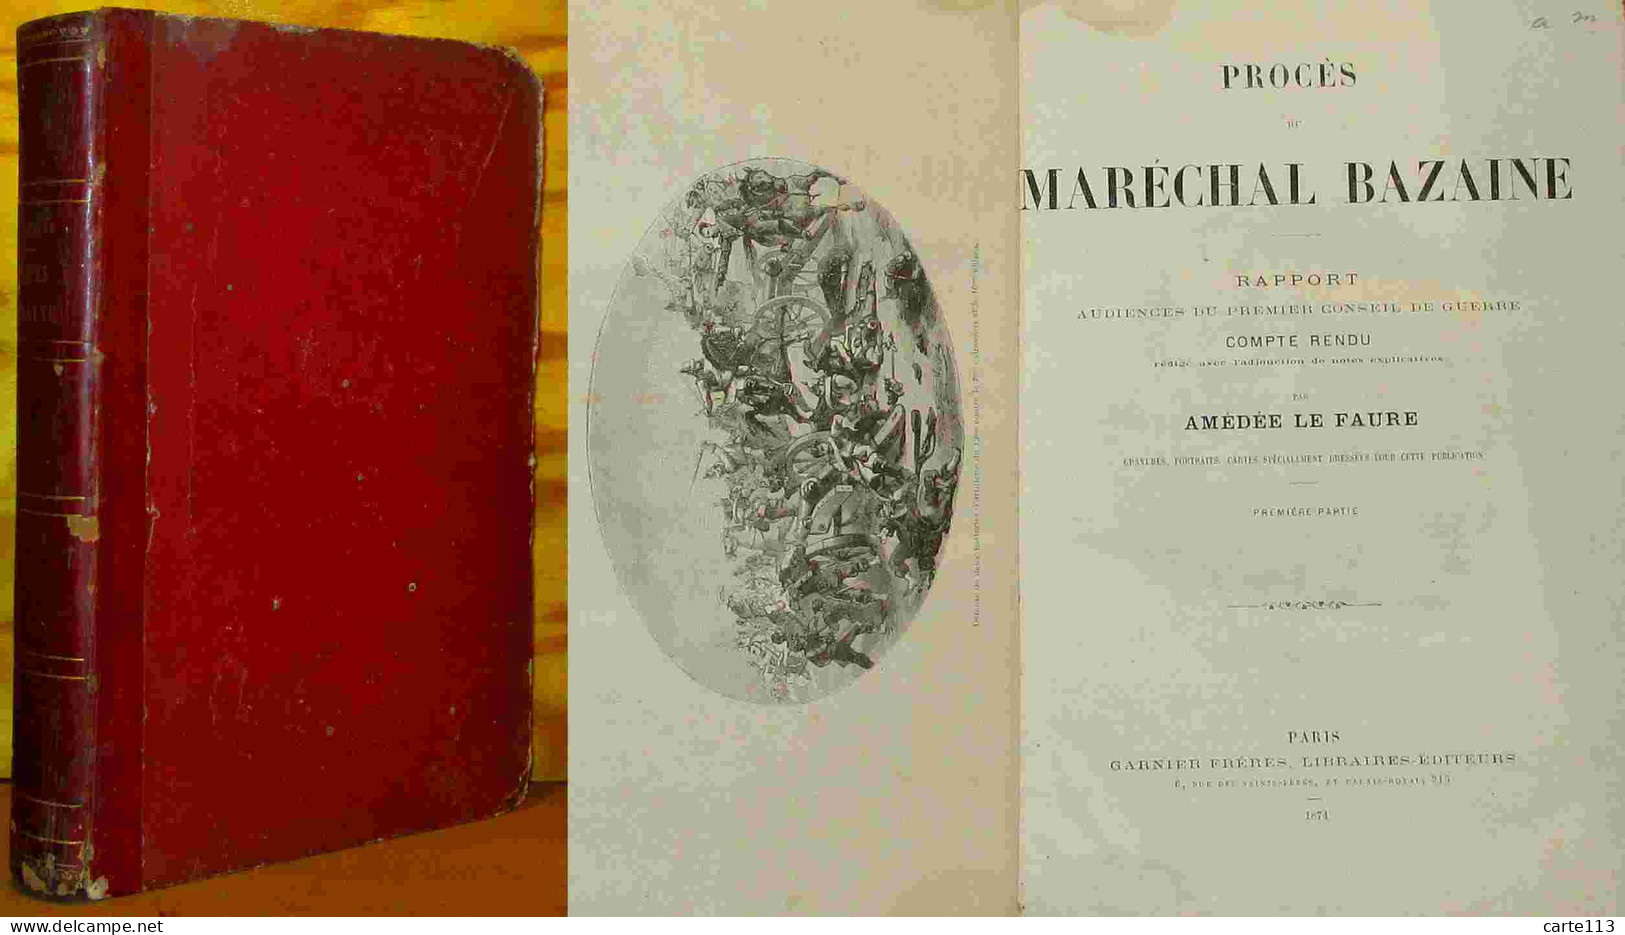 LE FAURE Amedee - LE PROCES DU MARECHAL BAZAINE - 1801-1900